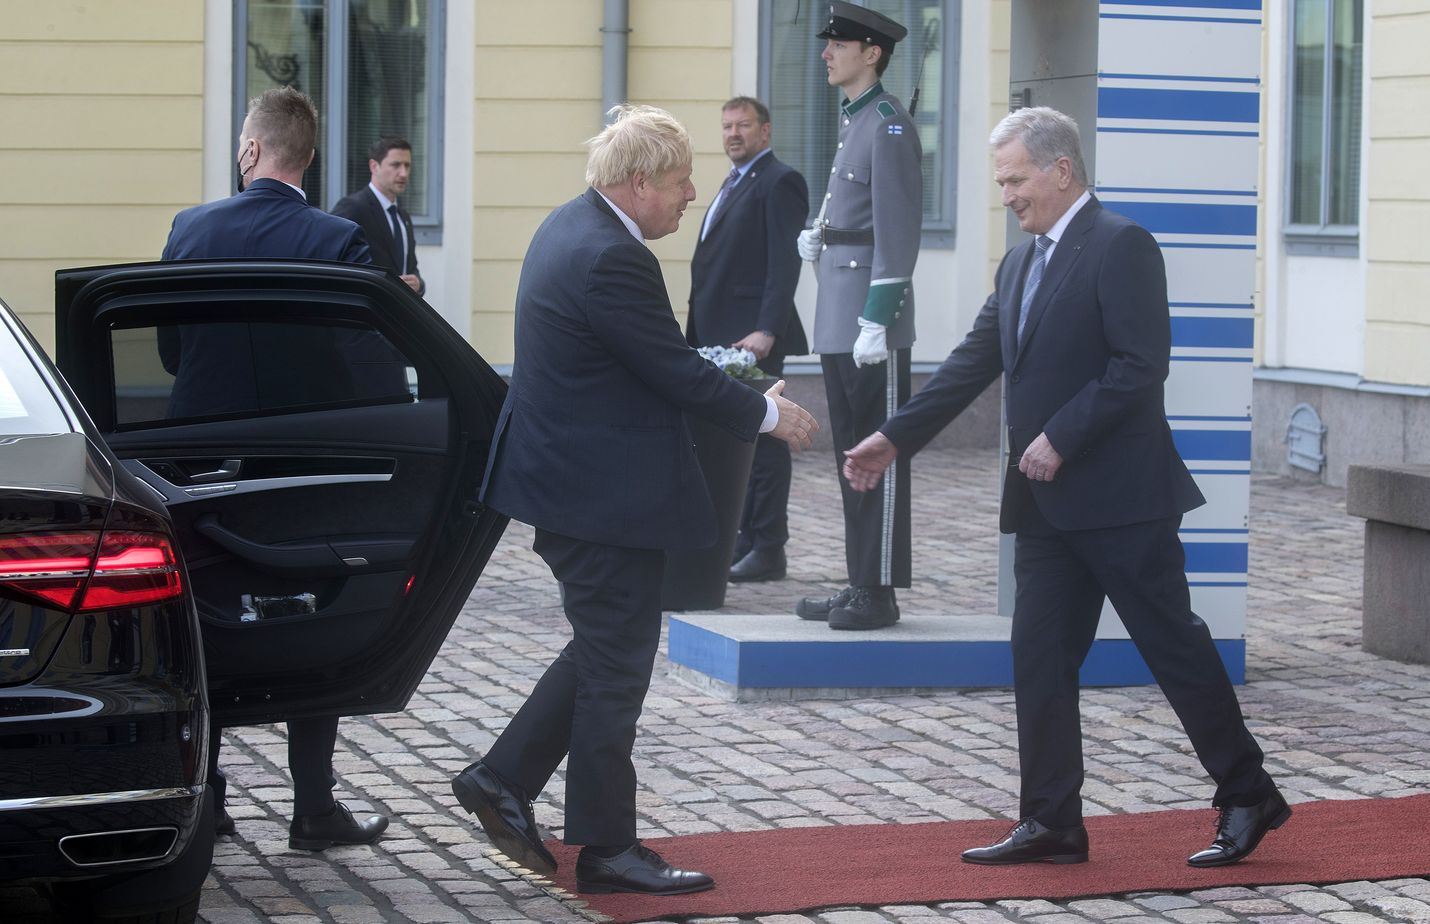 Britannian pääministeri Boris Johnson kävi tuomassa tasavallan presidentti Sauli Niinistölle mieluisia uutisia Britannian turvallisuustakeista, mikäli Suomea uhkaisi vaara.